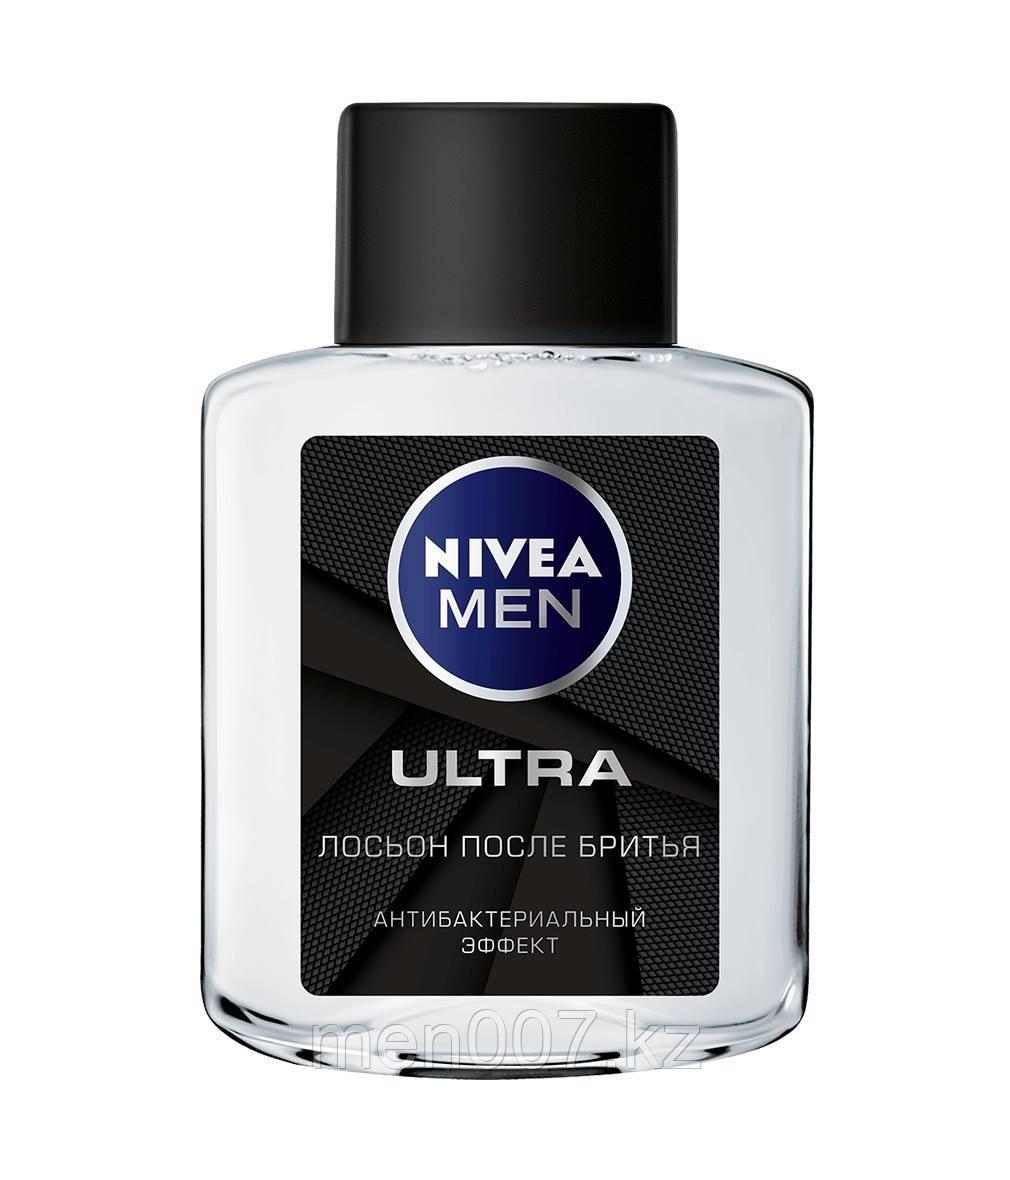 Nivea Men Ultra (лосьон после бритья) (антибактериальный) 100 мл